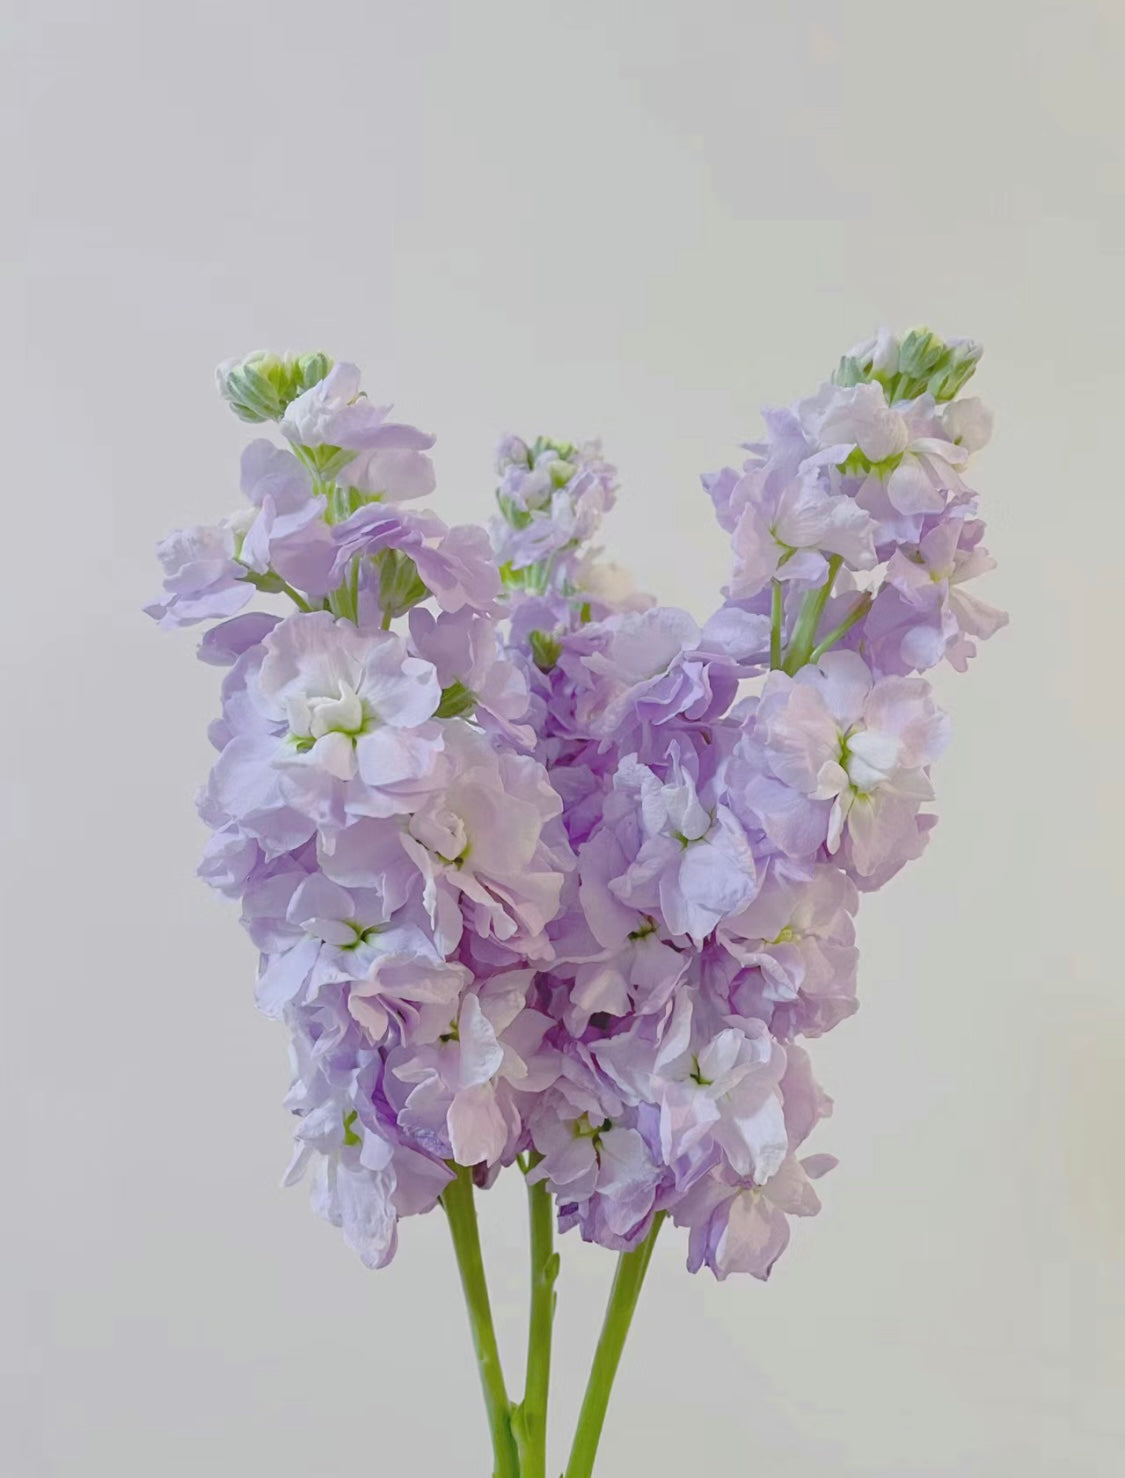 紫羅蘭是一種優雅而迷人的花卉，常被用於製作花束和花環。它們有著深紫色和粉色的花朵，象徵著謙虛和純潔。紫羅蘭的芳香清新怡人，可以緩解緊張和壓力，讓人心情平靜。紫羅蘭是一種非常適合用於送禮的花卉，尤其適合送給長者和學生。送給摯愛一束紫羅蘭，讓他們感受你的愛和祝福。立即下單，讓紫羅蘭的美麗和芬芳，為你帶來平靜和愉悅。